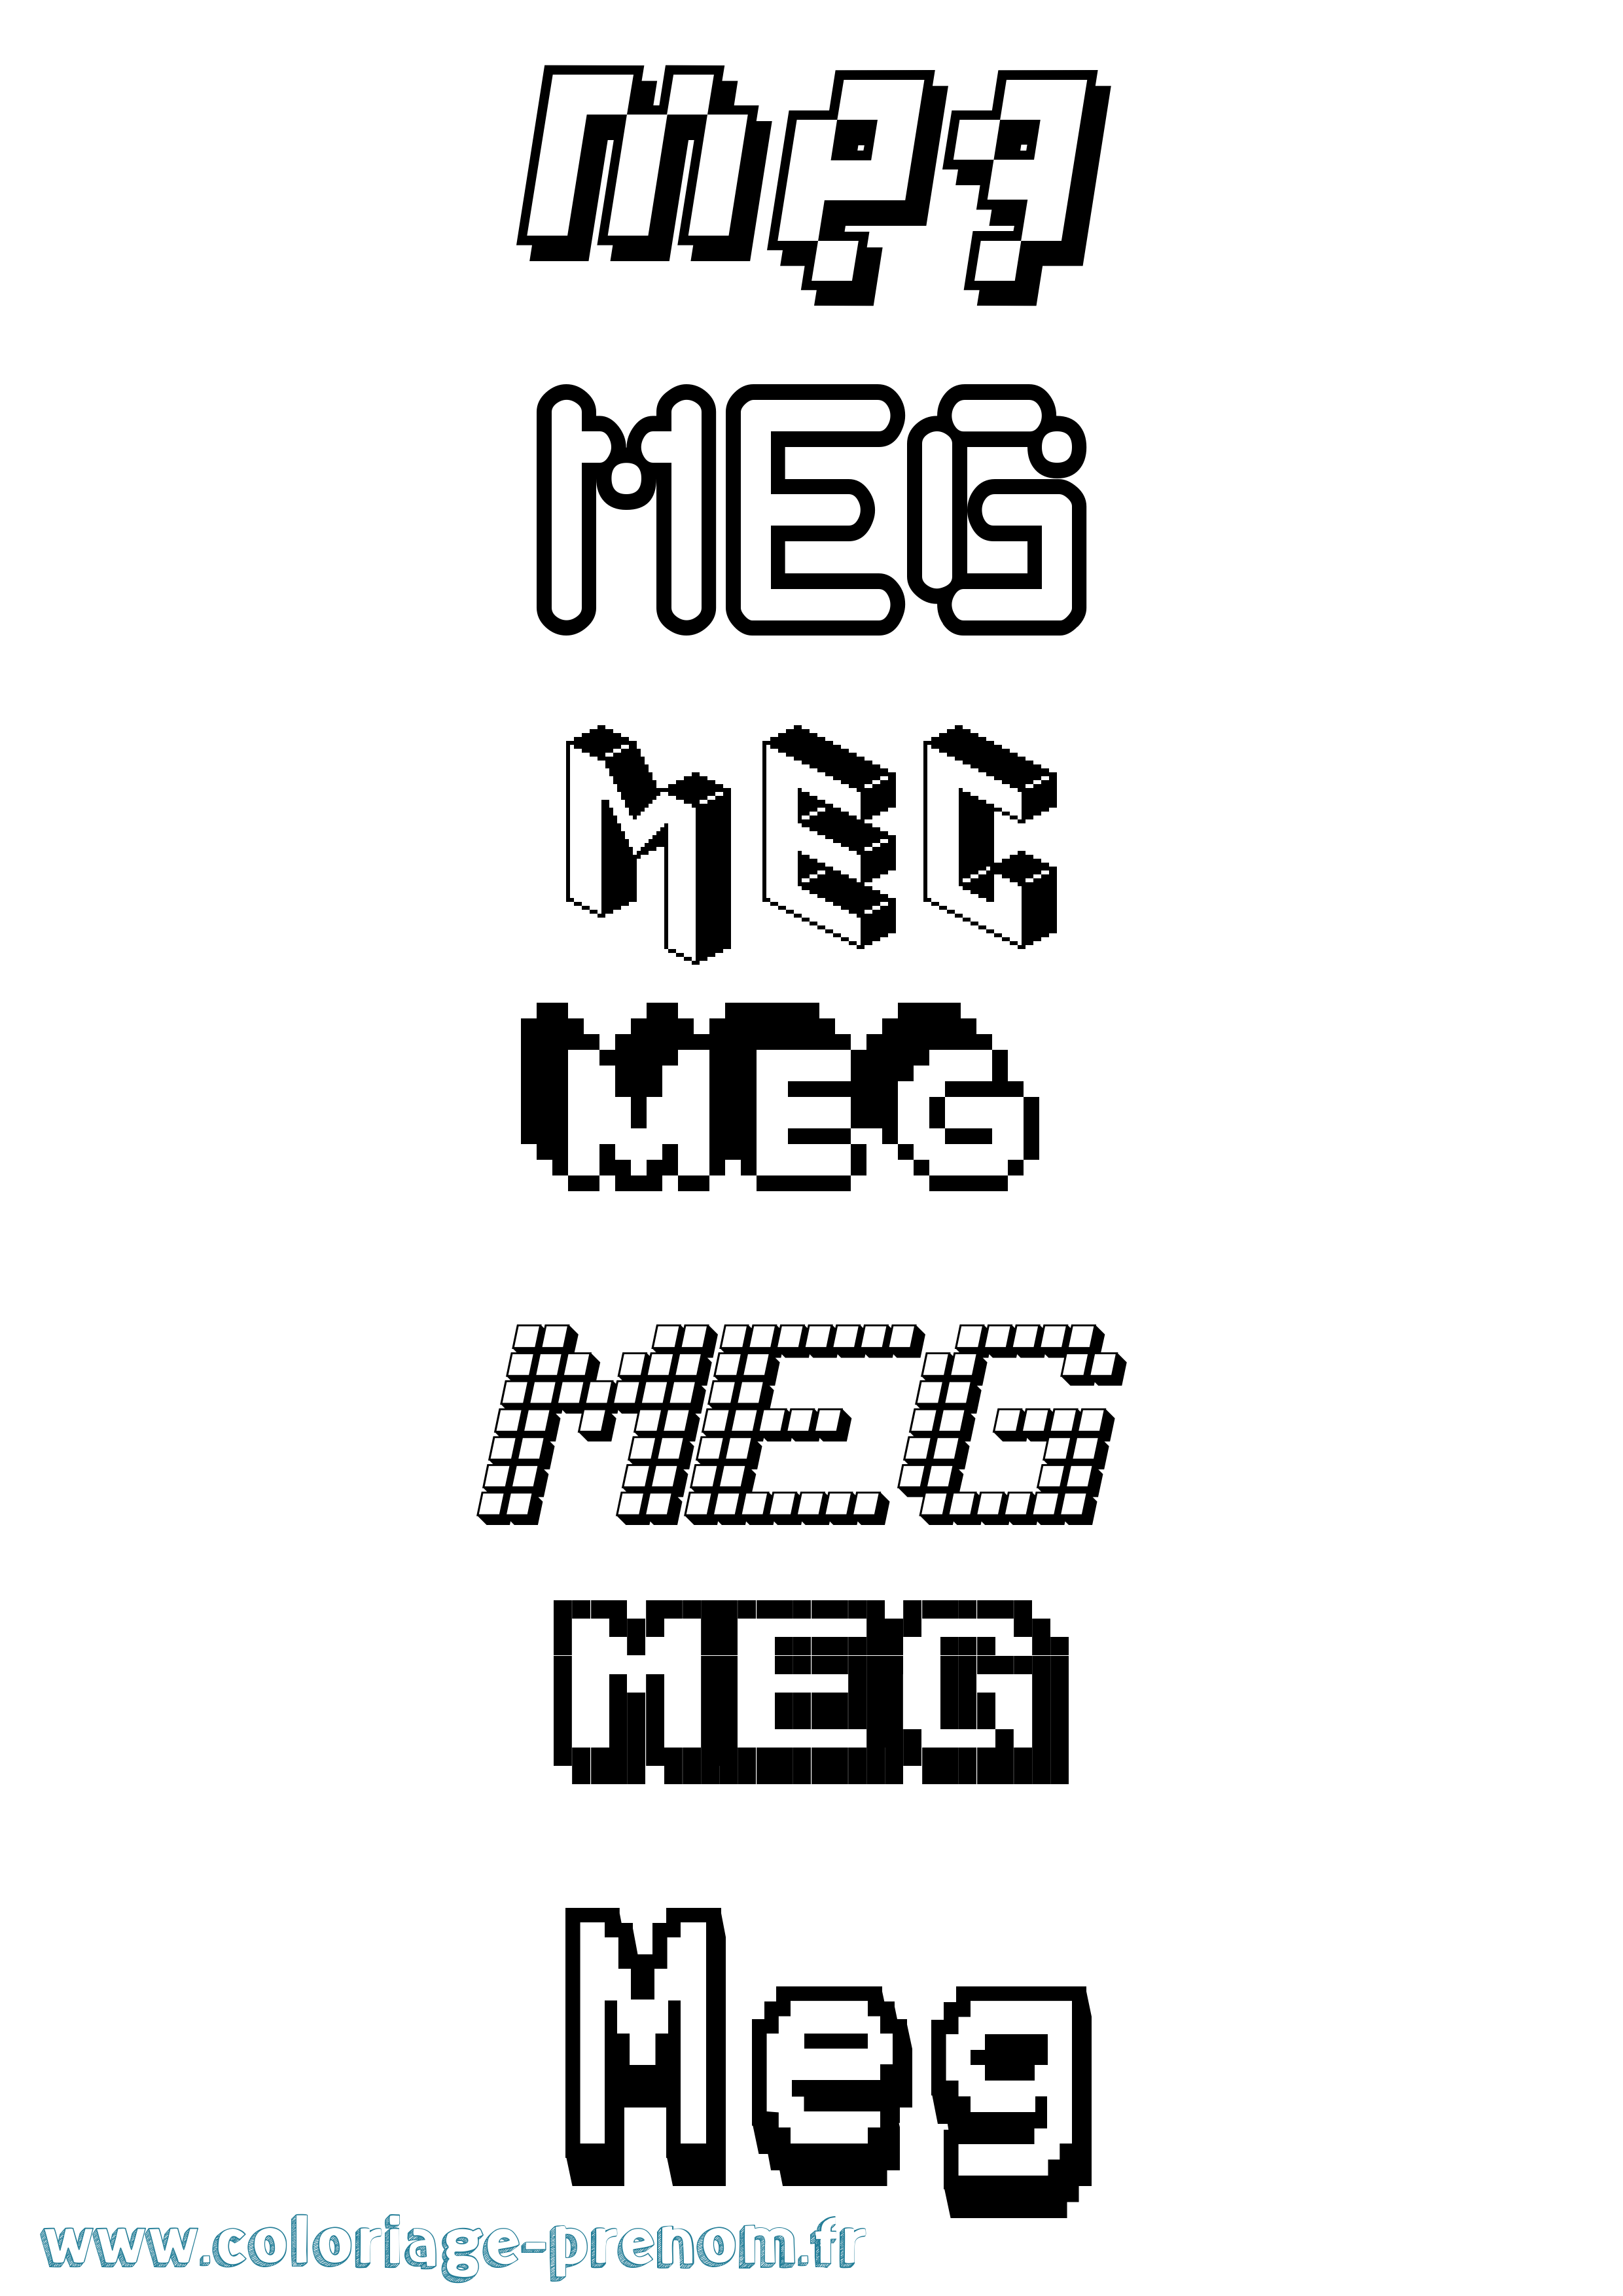 Coloriage prénom Meg Pixel